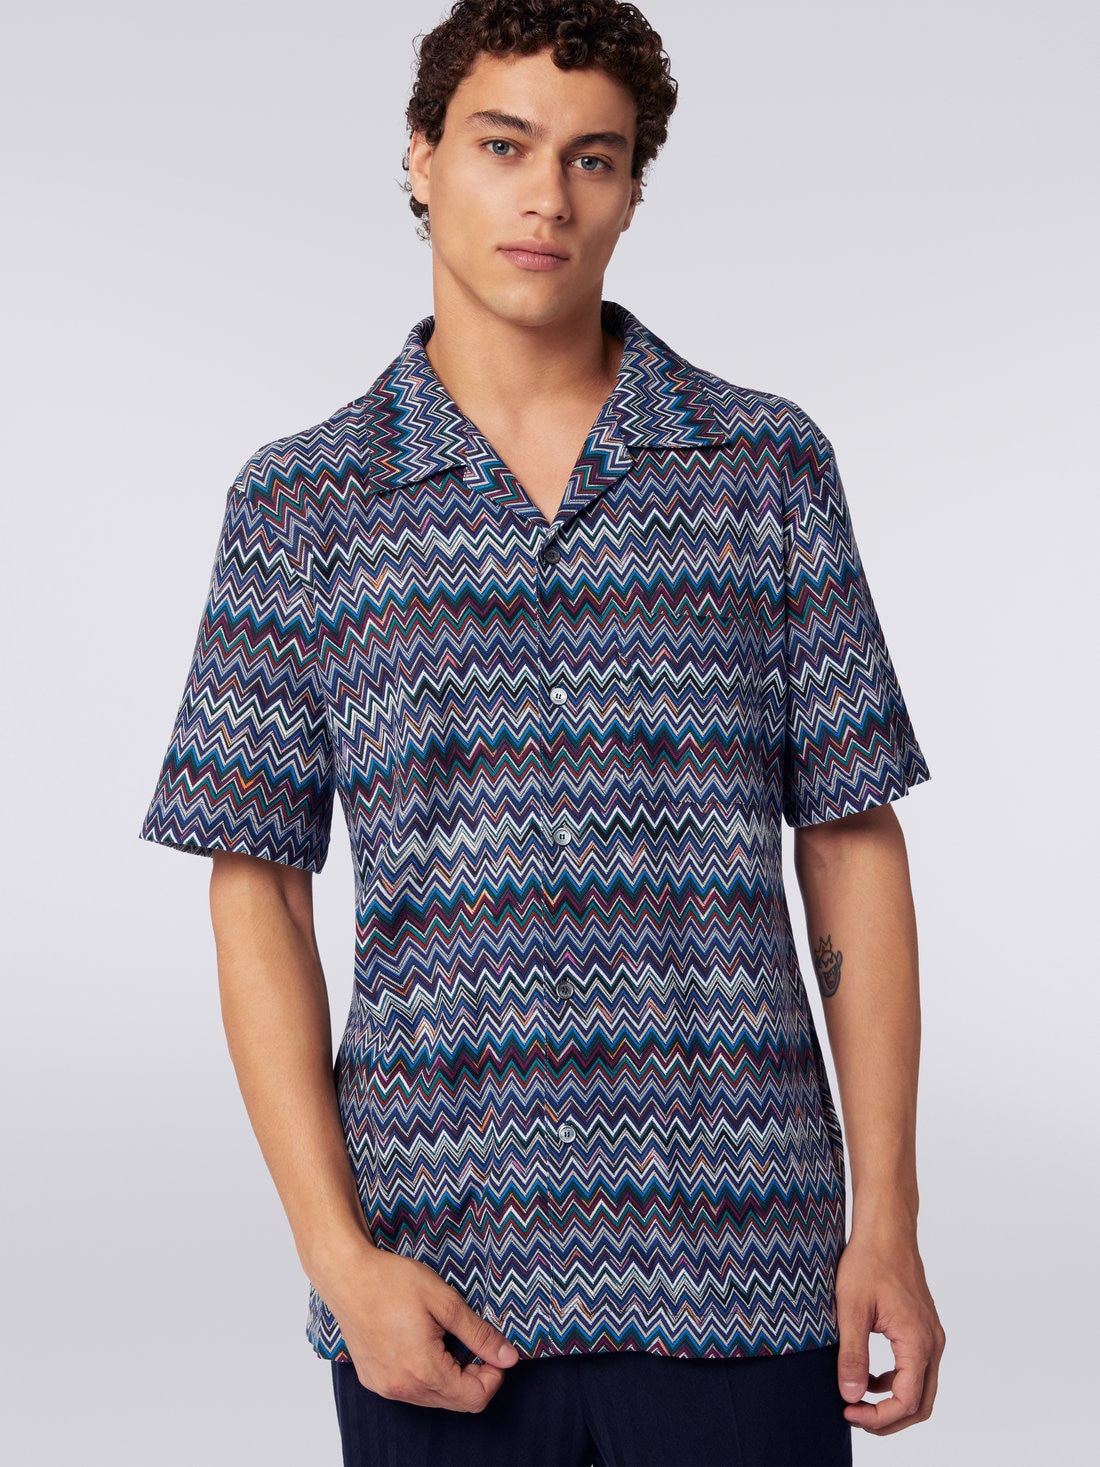 Camisa modelo bolos de manga corta de algodón y viscosa en zigzag, Azul Marino  - US23WJ08BR00OUSM8Y1 - 4